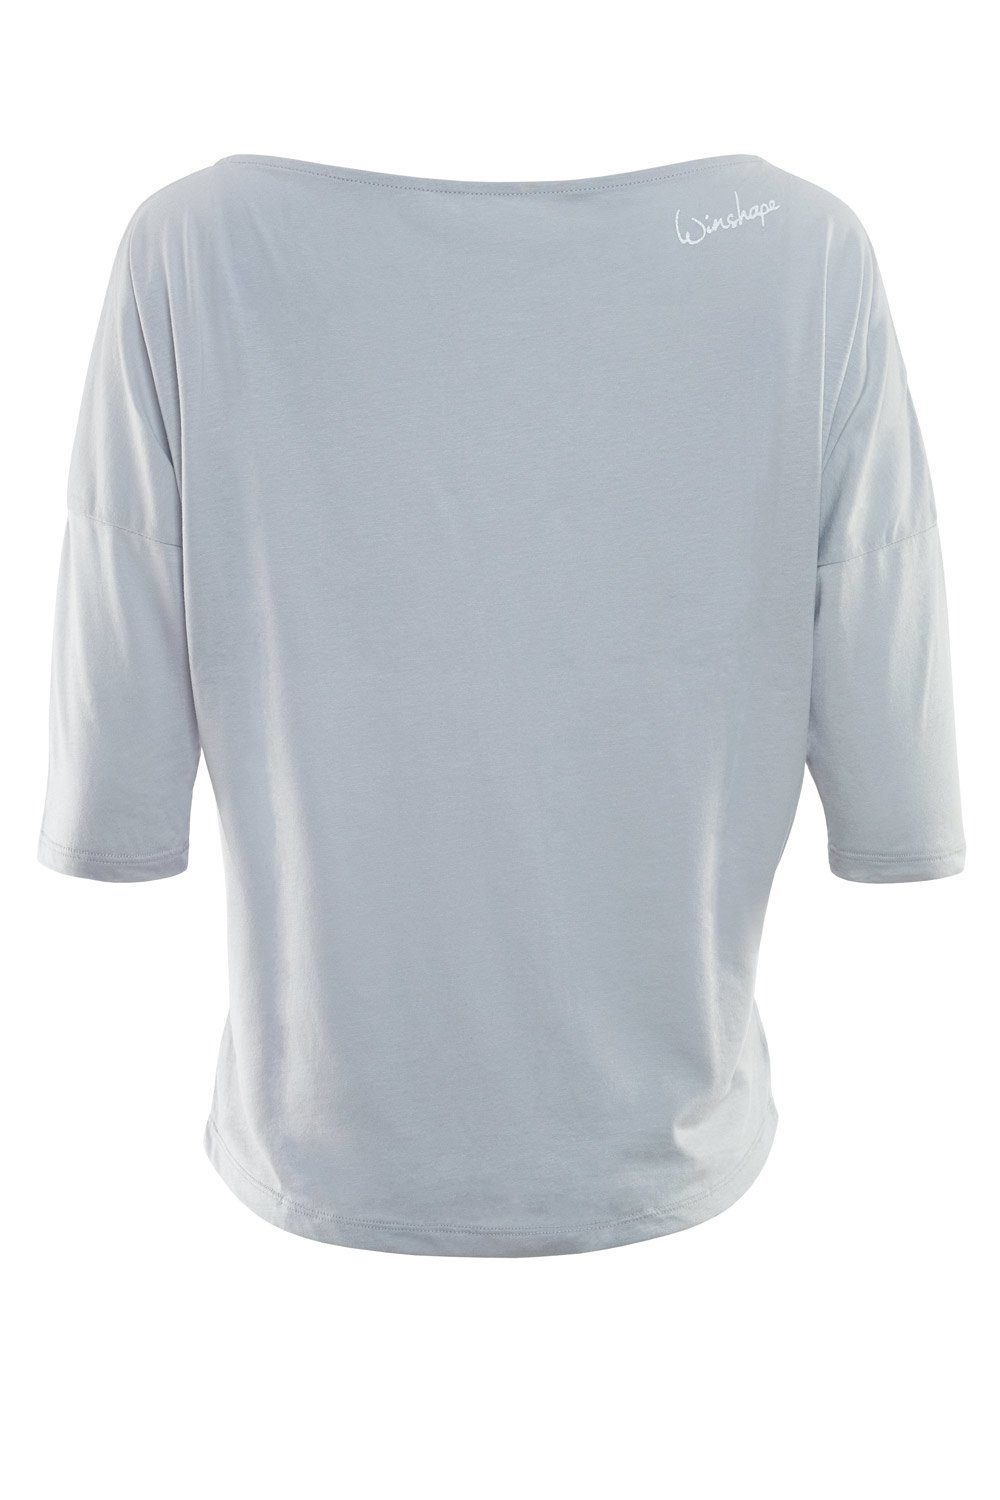 Winshape 3/4-Arm-Shirt weiß mit - leicht cool MCS001 weißem grey glitzer Glitzer-Aufdruck ultra